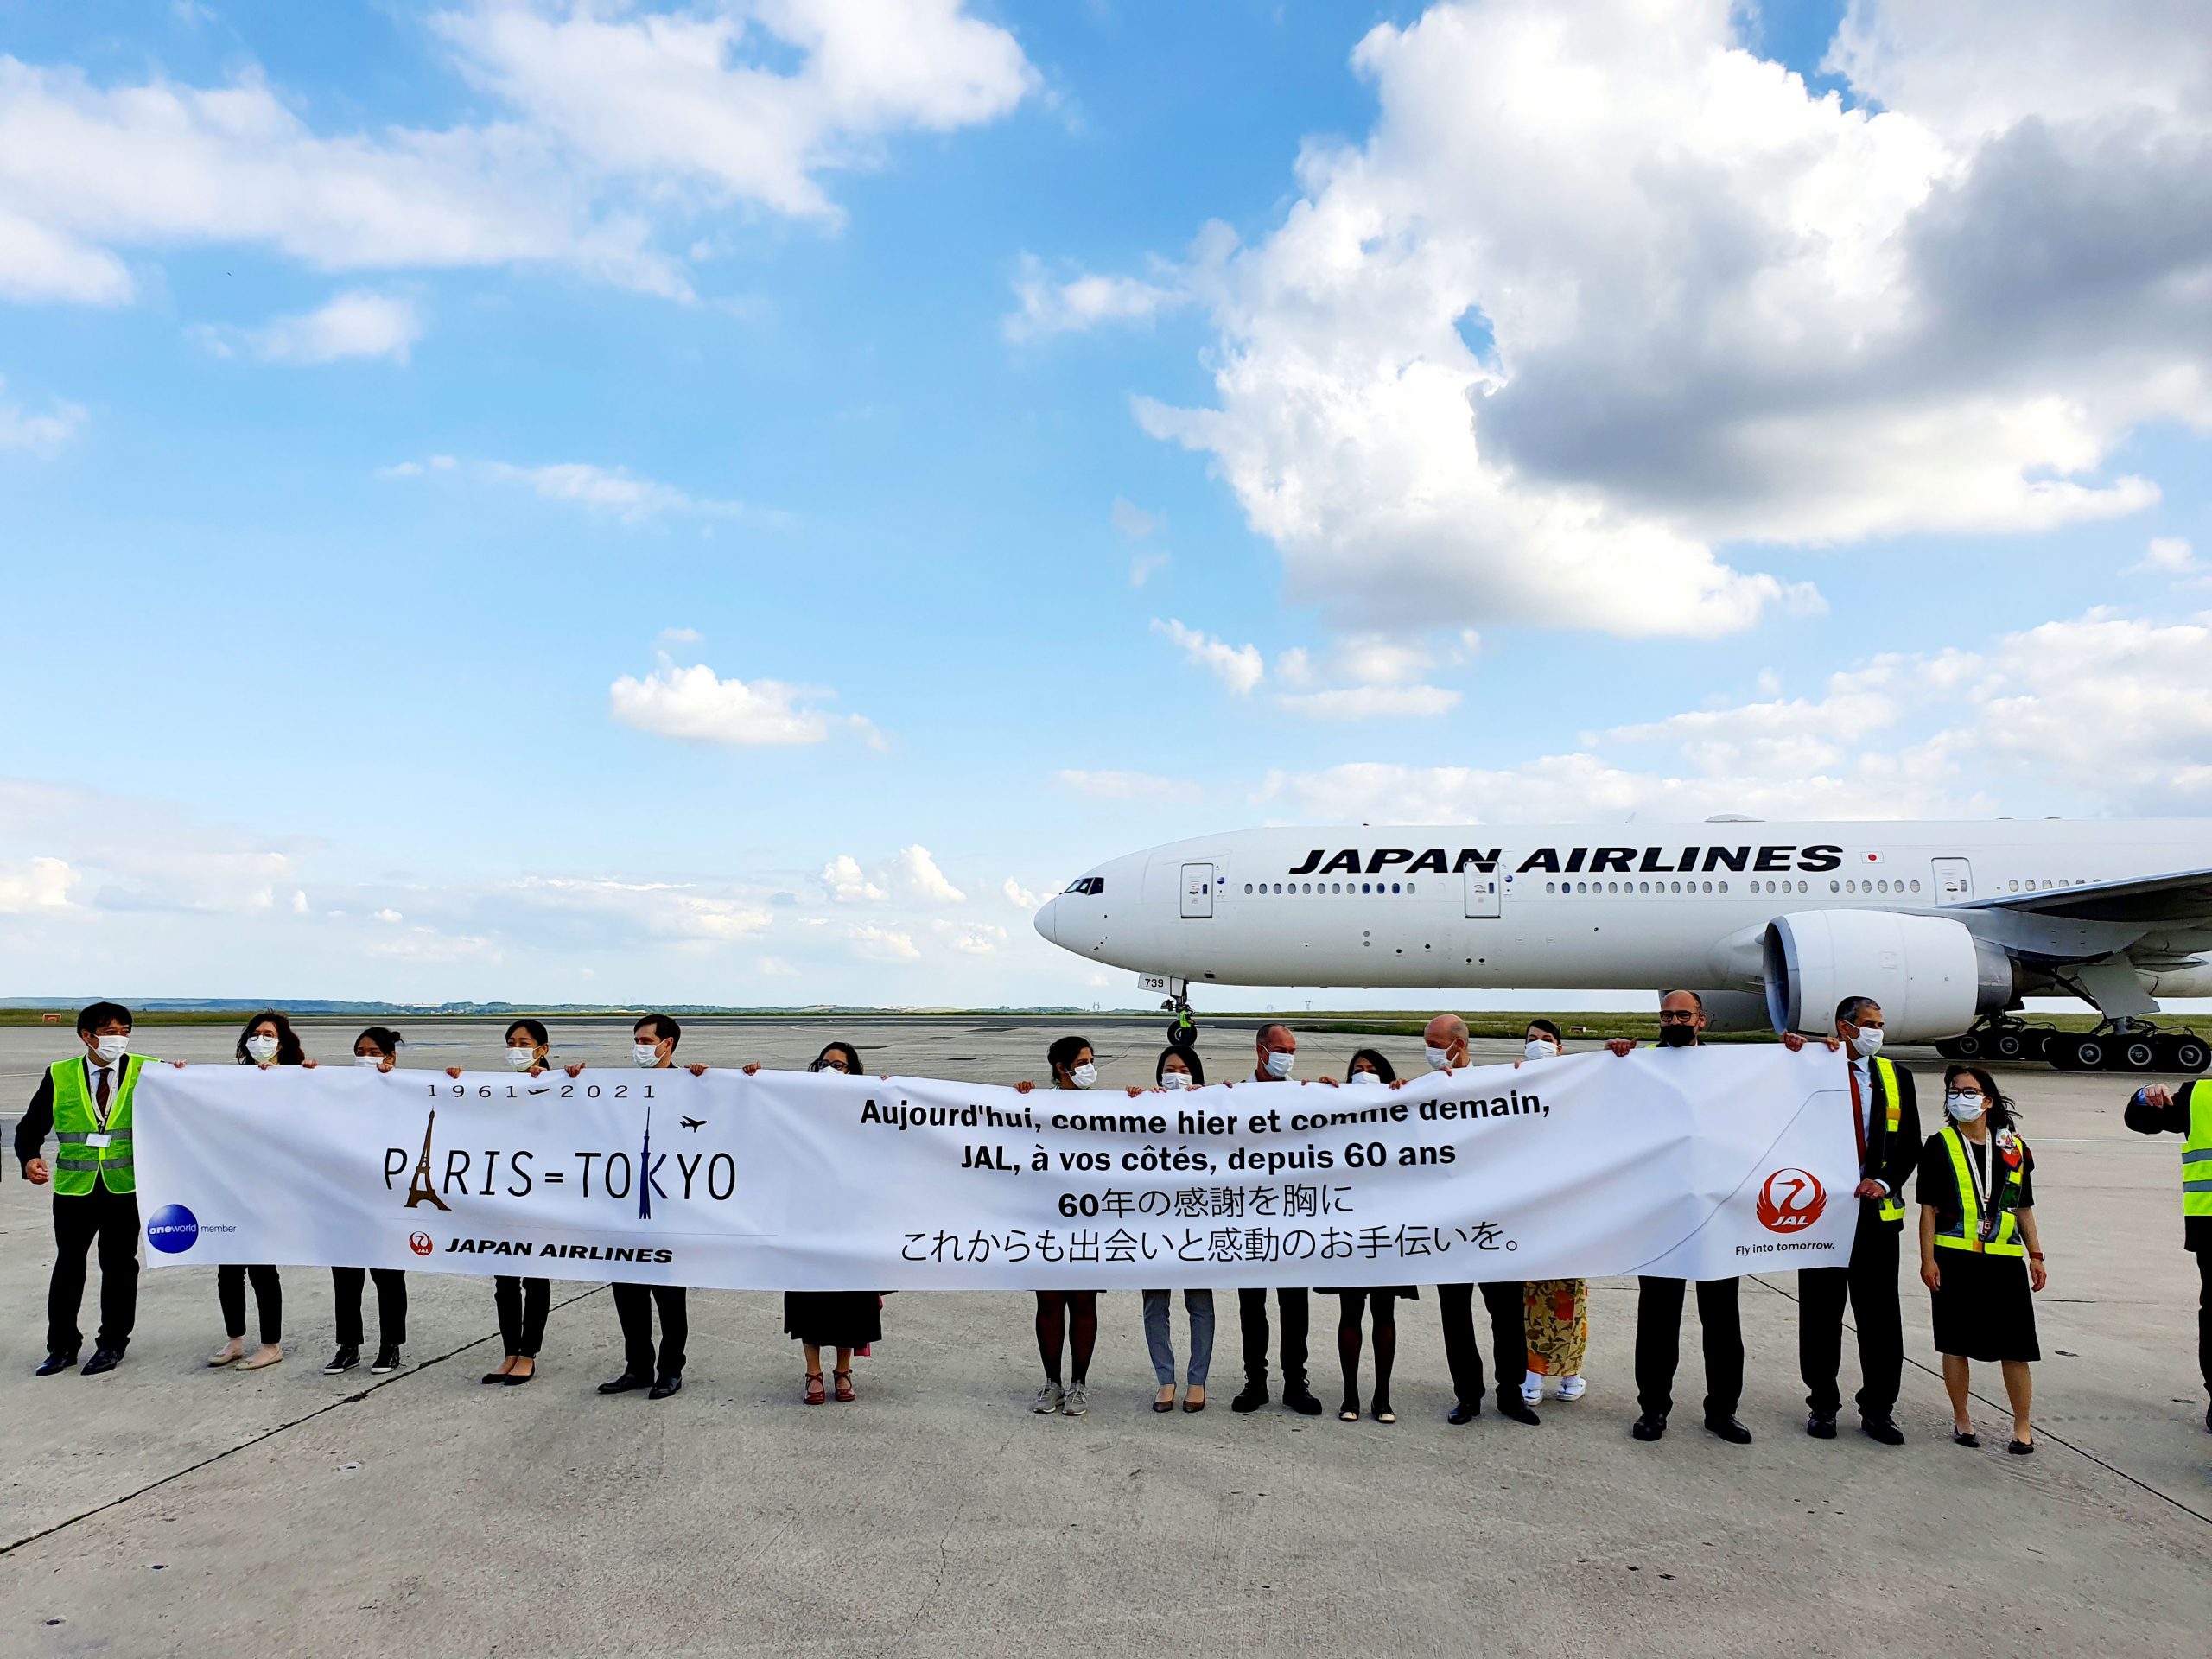 L’Union européenne signe un accord aérien avec le Japon 20 Air Journal